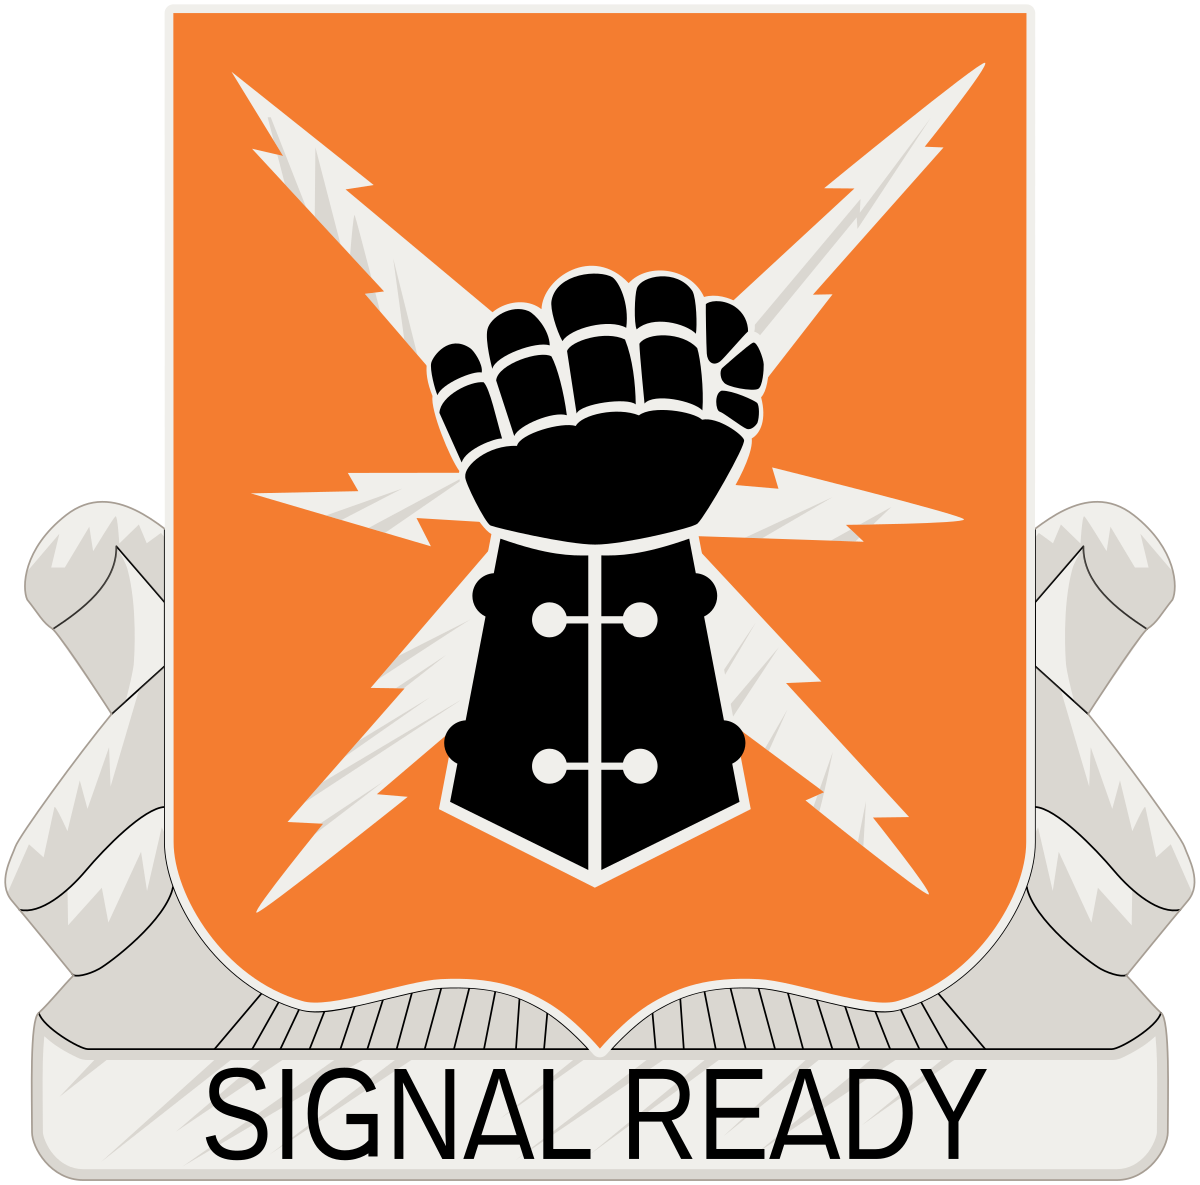 38th Signal Battalion - Wikipedia